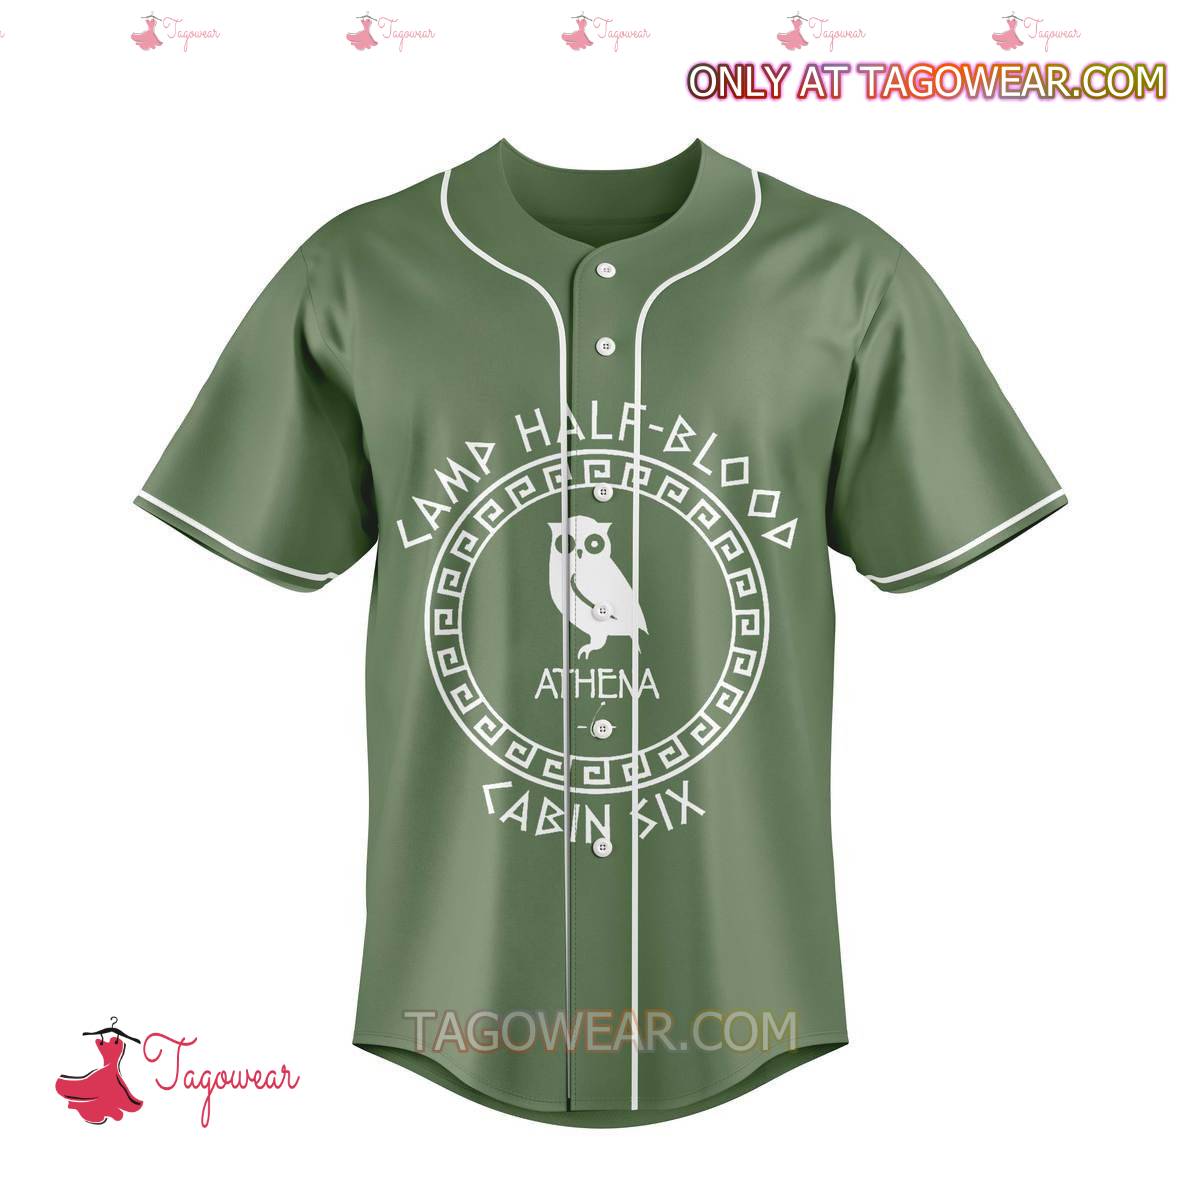 Camp Half Blood Cabin Six Athena Personalized Baseball Jersey a